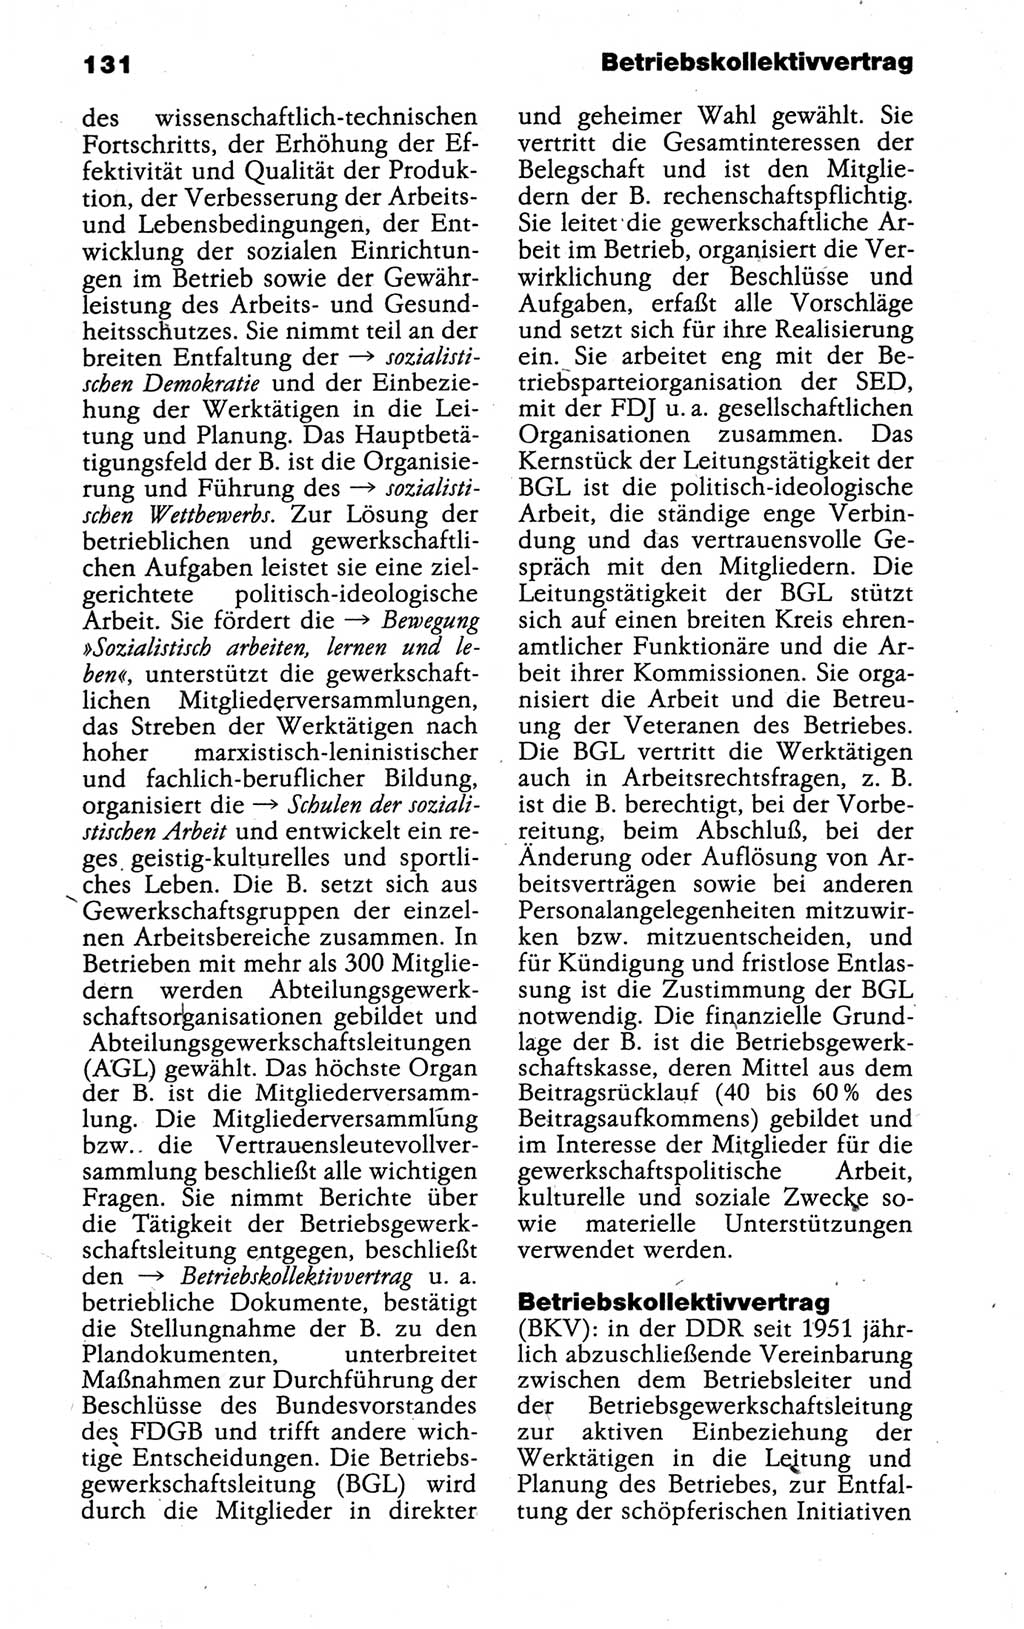 Kleines politisches Wörterbuch [Deutsche Demokratische Republik (DDR)] 1988, Seite 131 (Kl. pol. Wb. DDR 1988, S. 131)